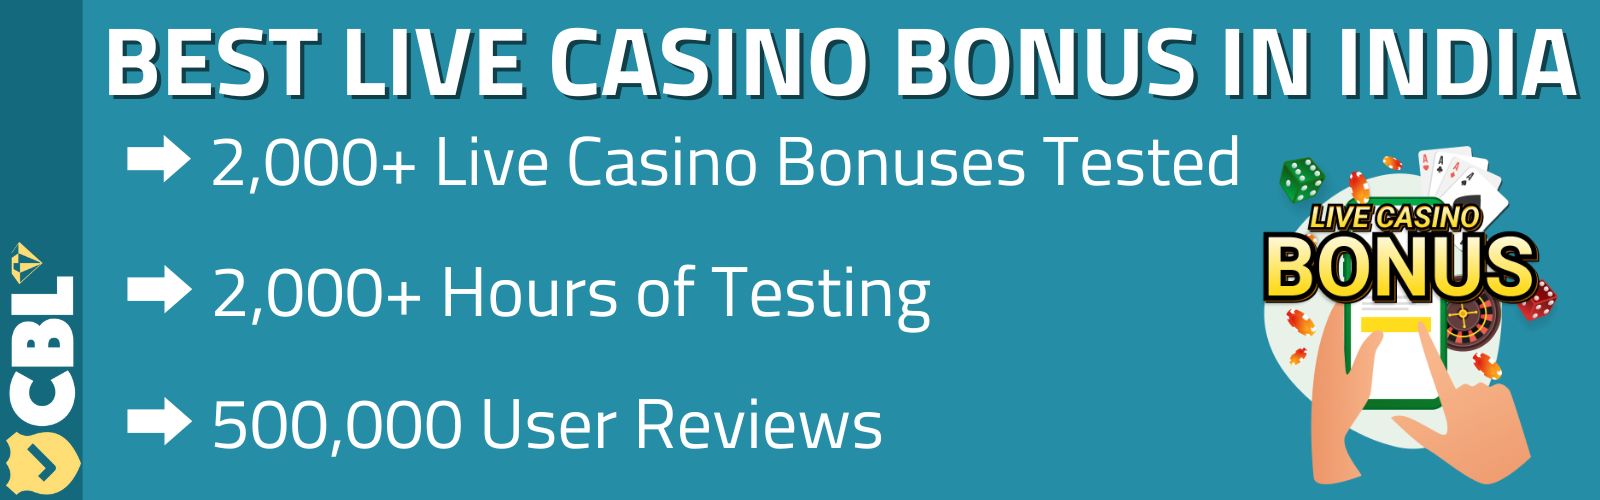 Live Casino Bonus India